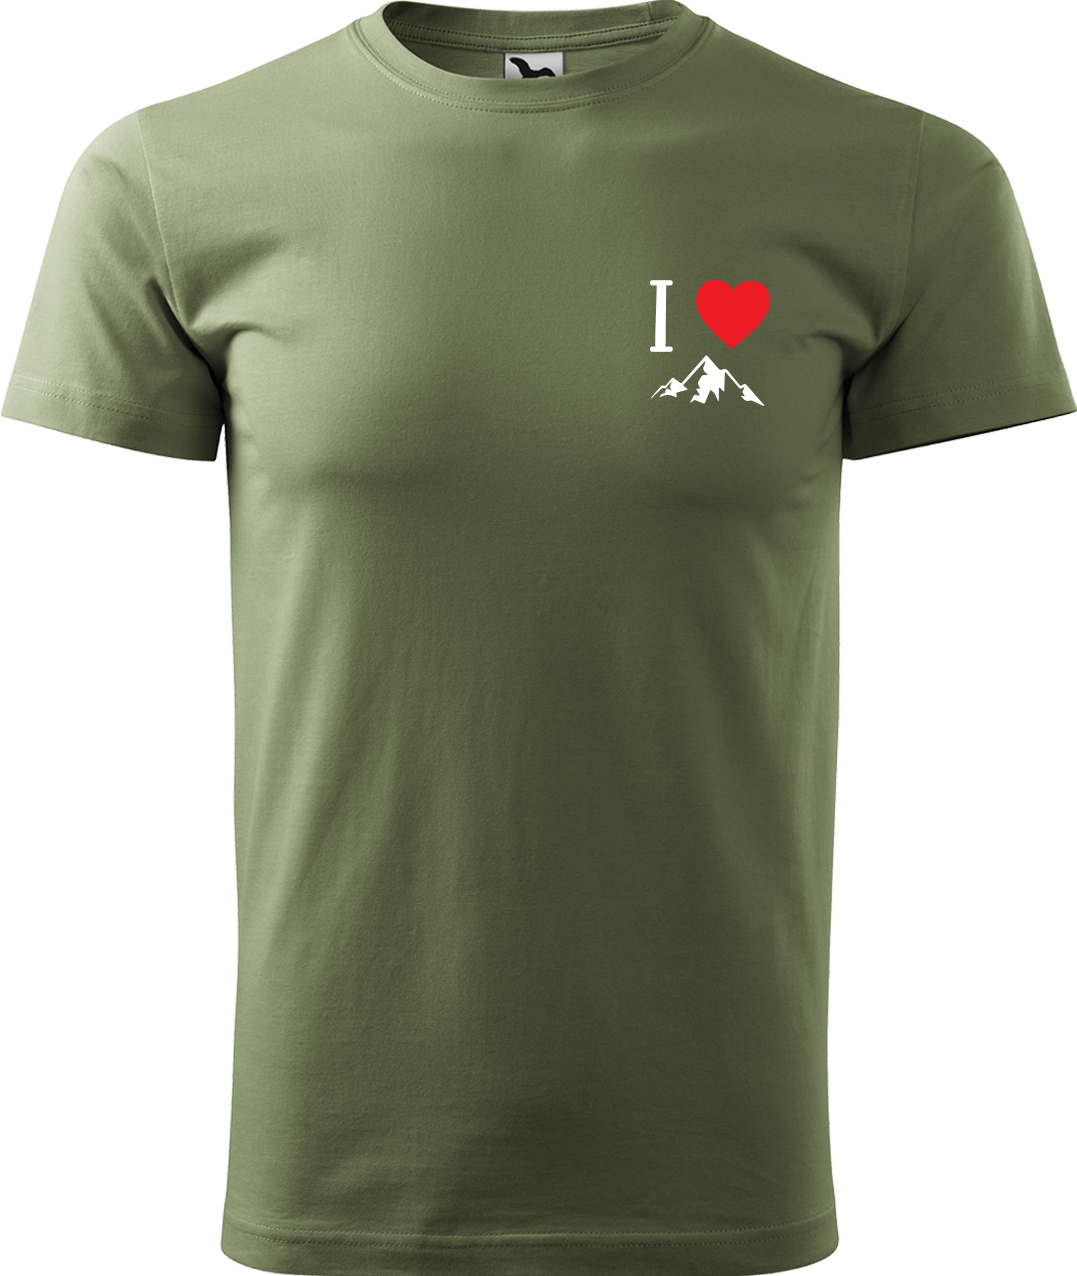 Pánské tričko na hory - I love mountain Velikost: 4XL, Barva: Světlá khaki (28), Střih: pánský